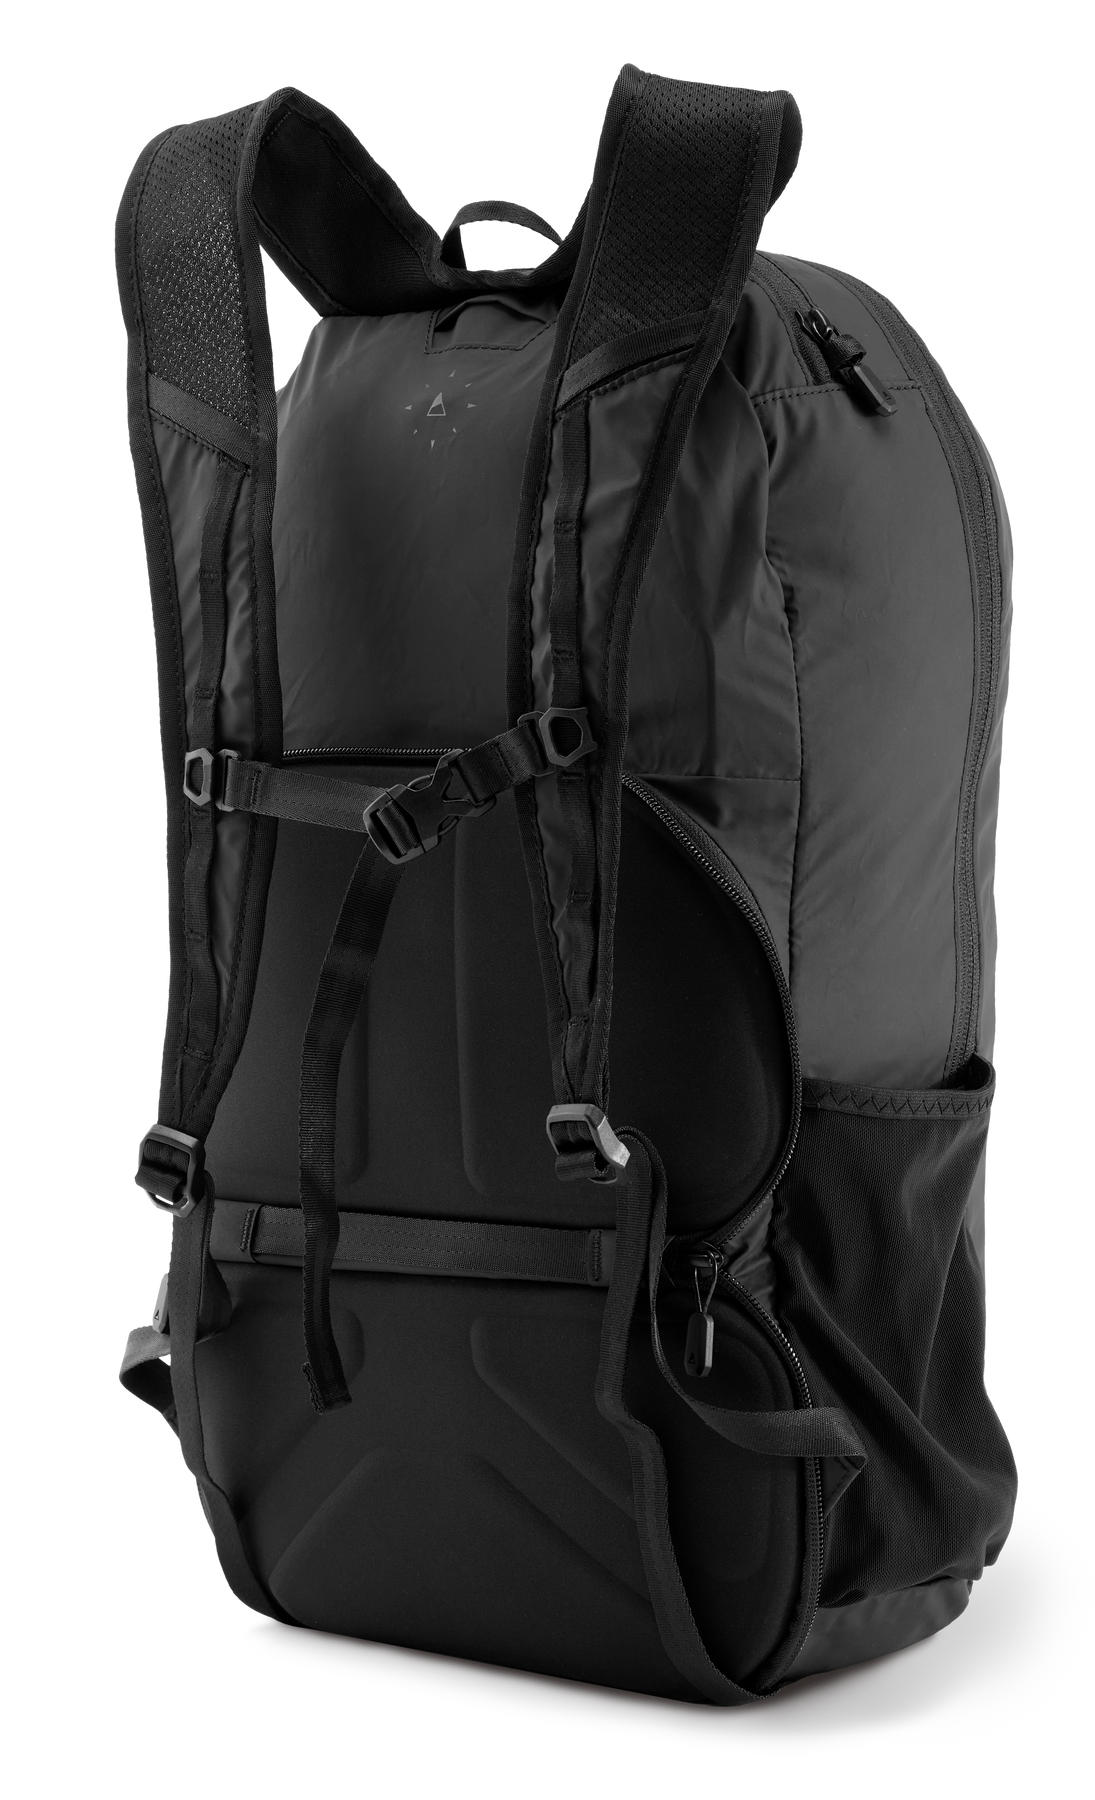 Kingsons  Sealth Series Laptop Backpack